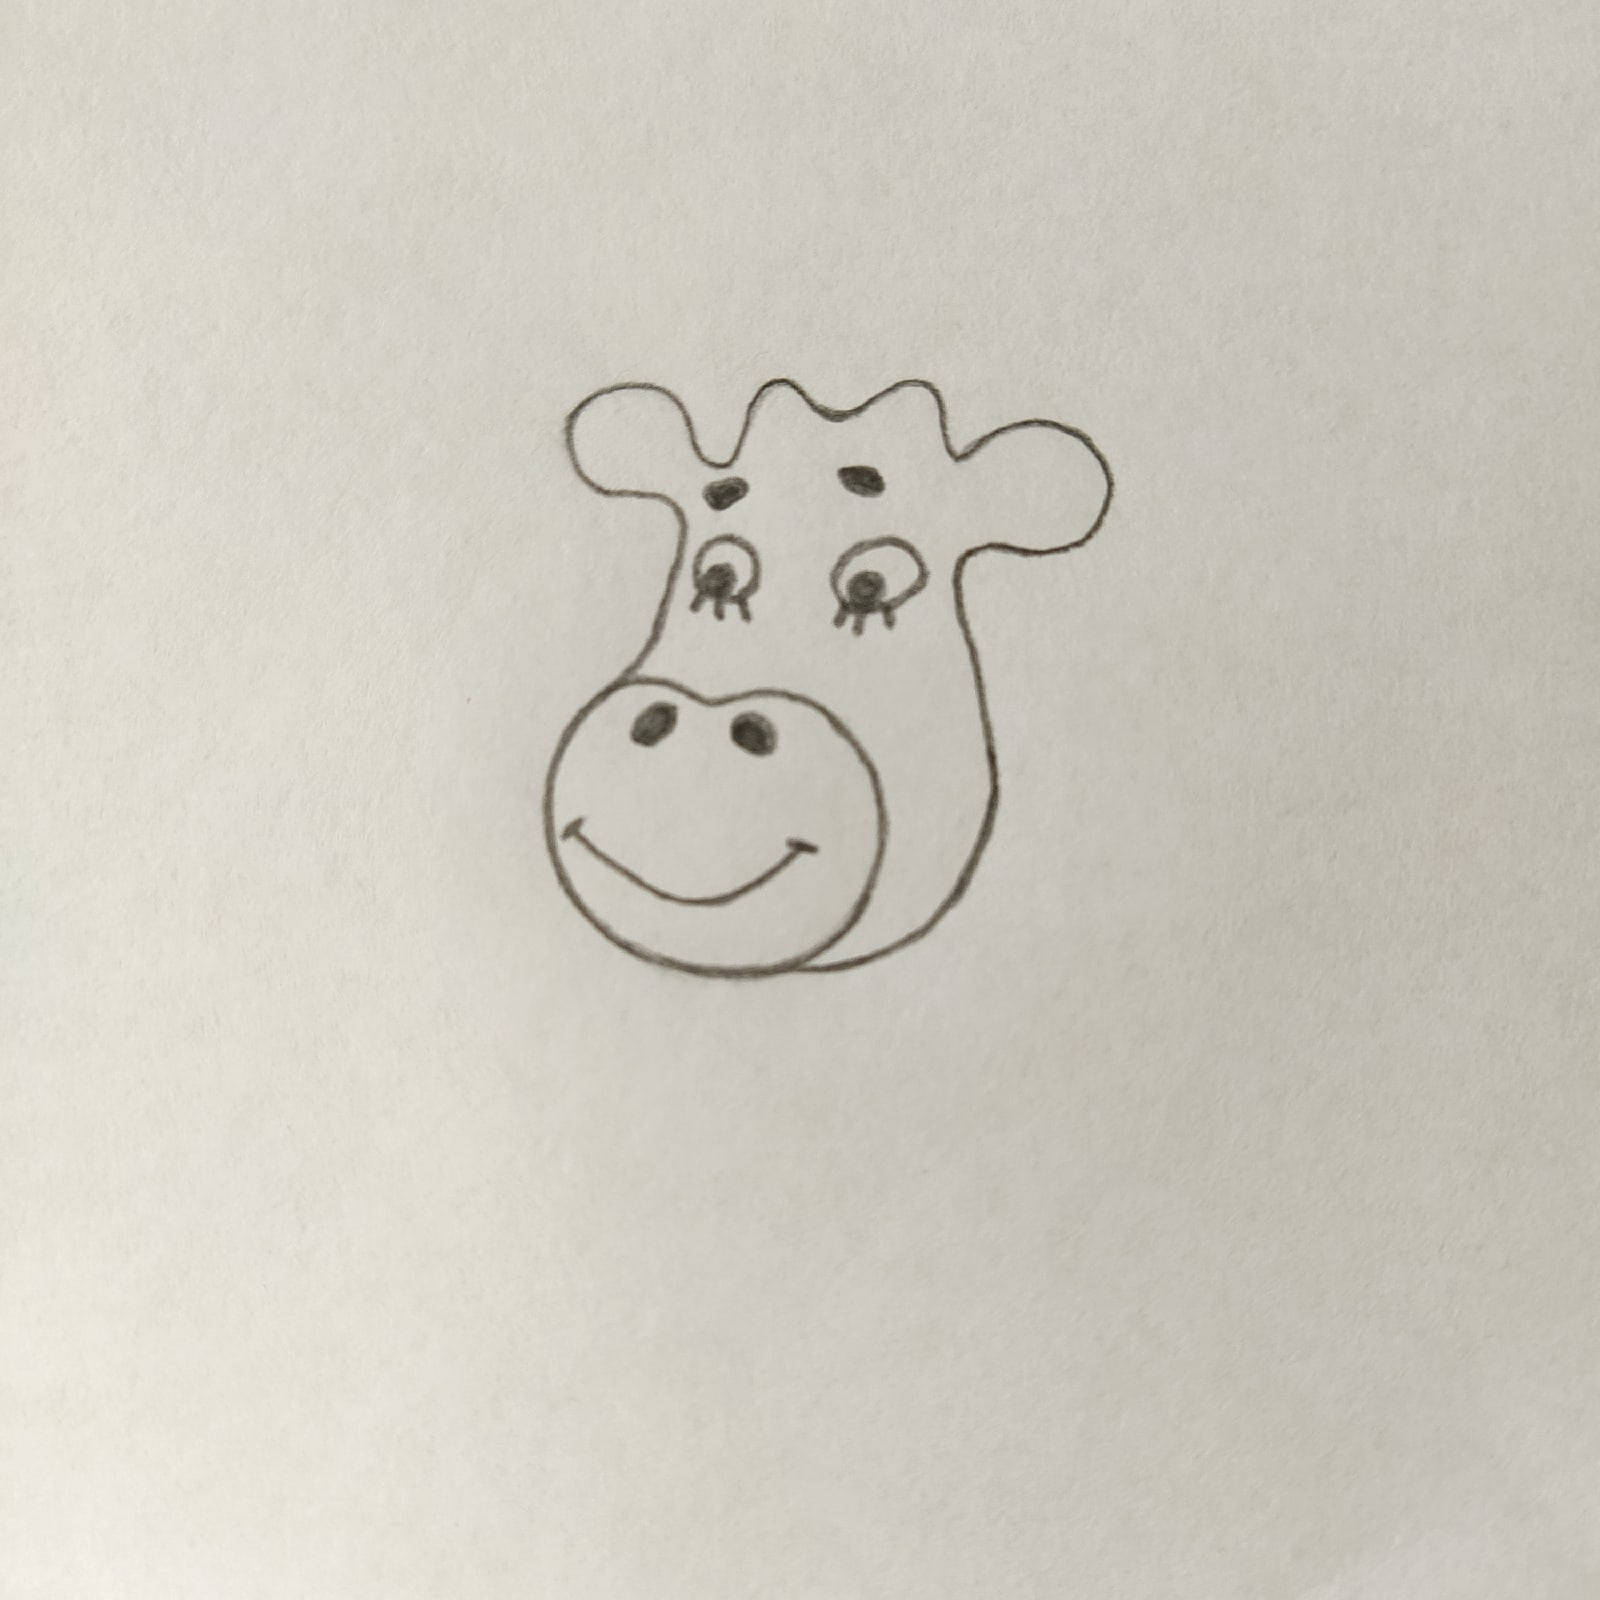 Оранжевая корова. Раскраски для детей оранжевая корова. Нарисовать оранжевую корову. Как нарисовать оранжевую корову